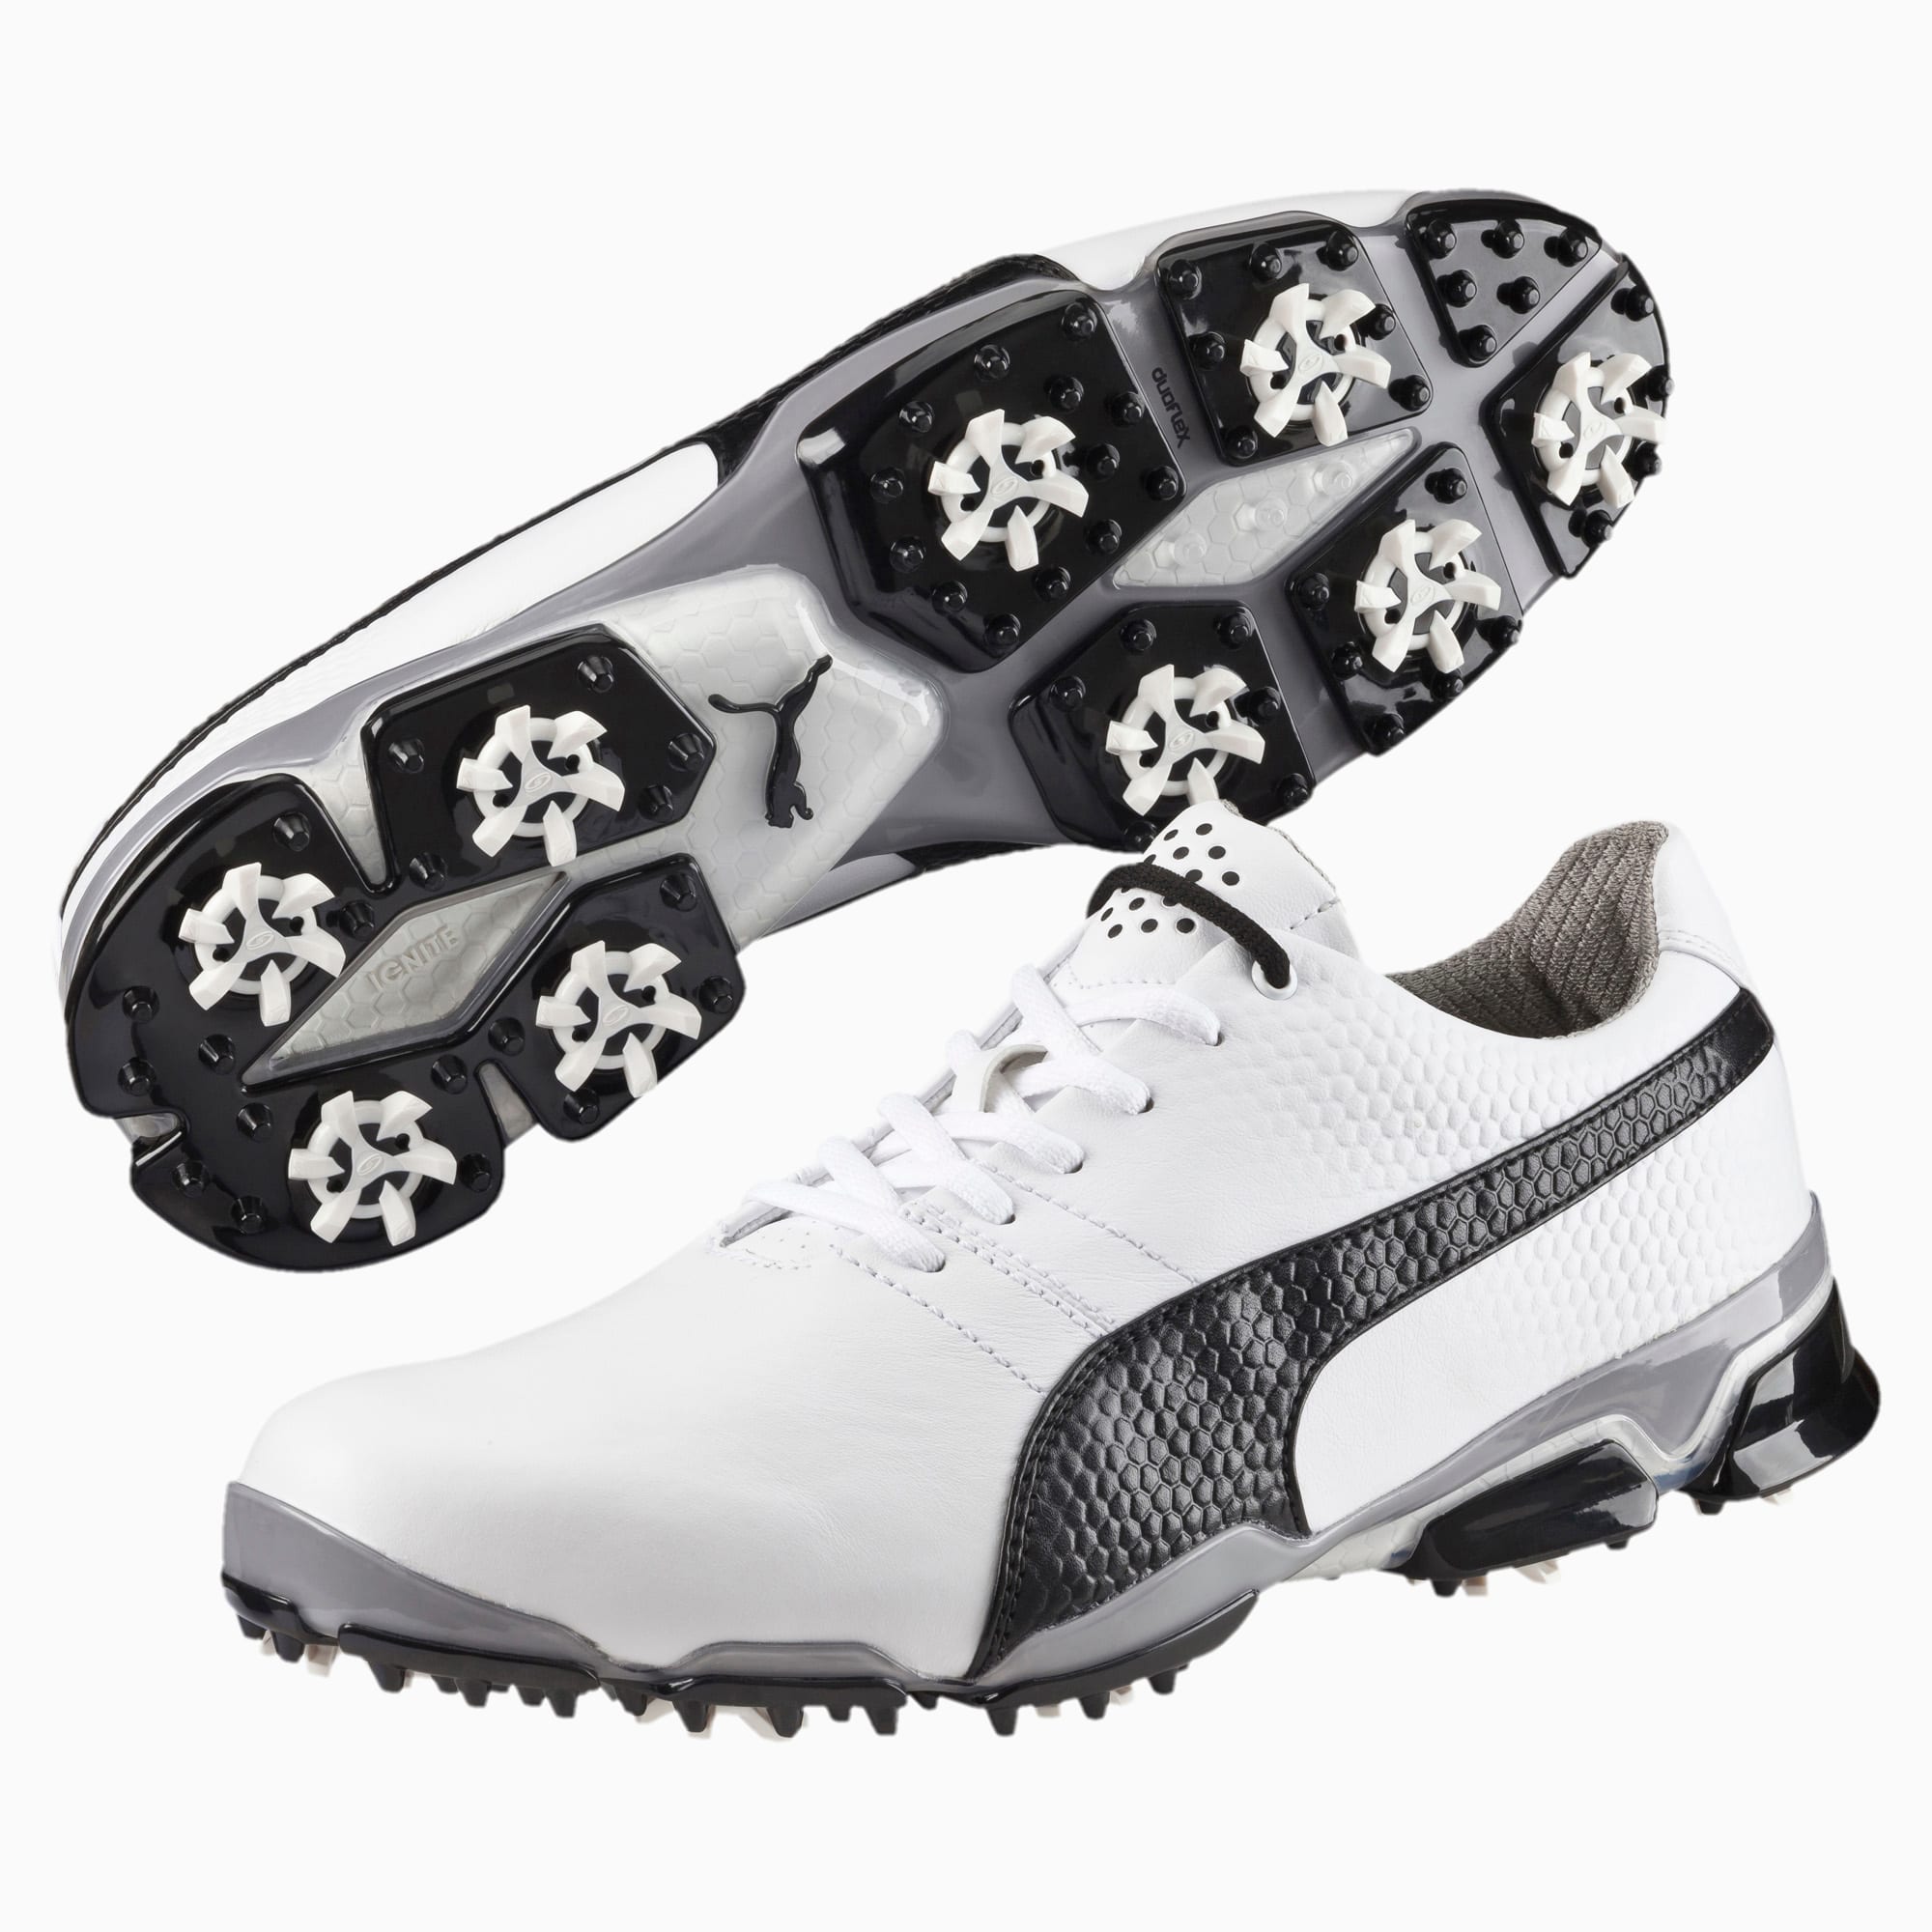 puma men's titantour ignite golf shoe